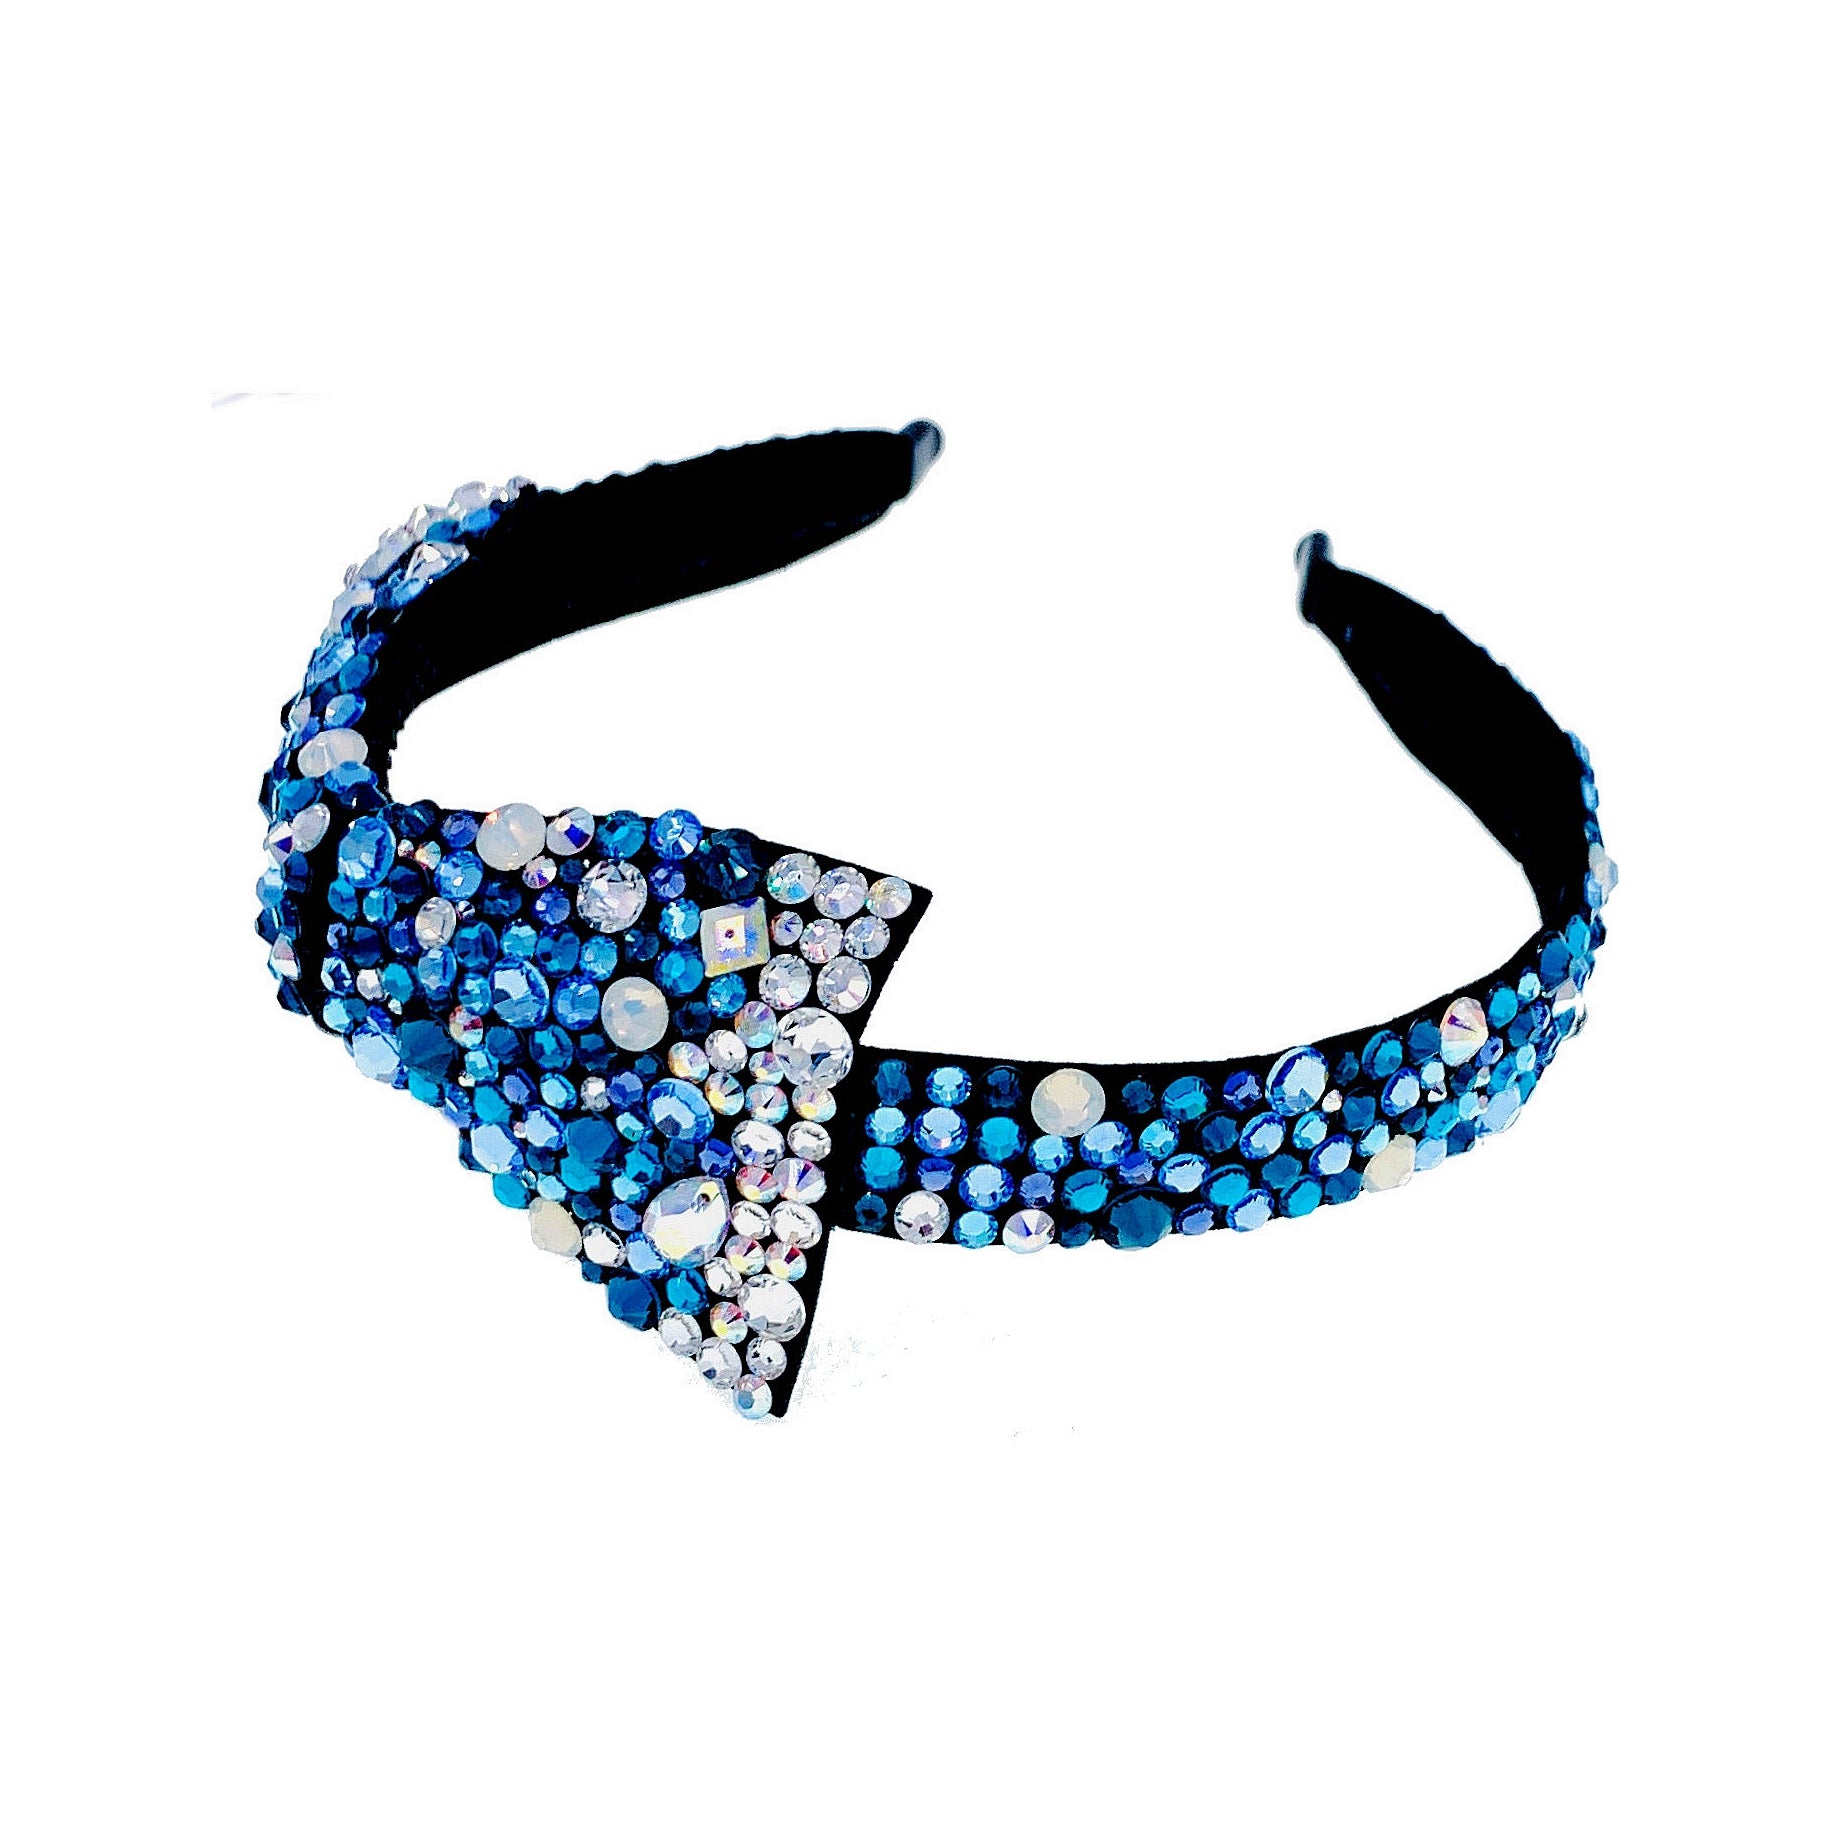 Debora Dreamy Bow Headband Handmade use Swarovski Crystals Hairband, Headband - MOGHANT